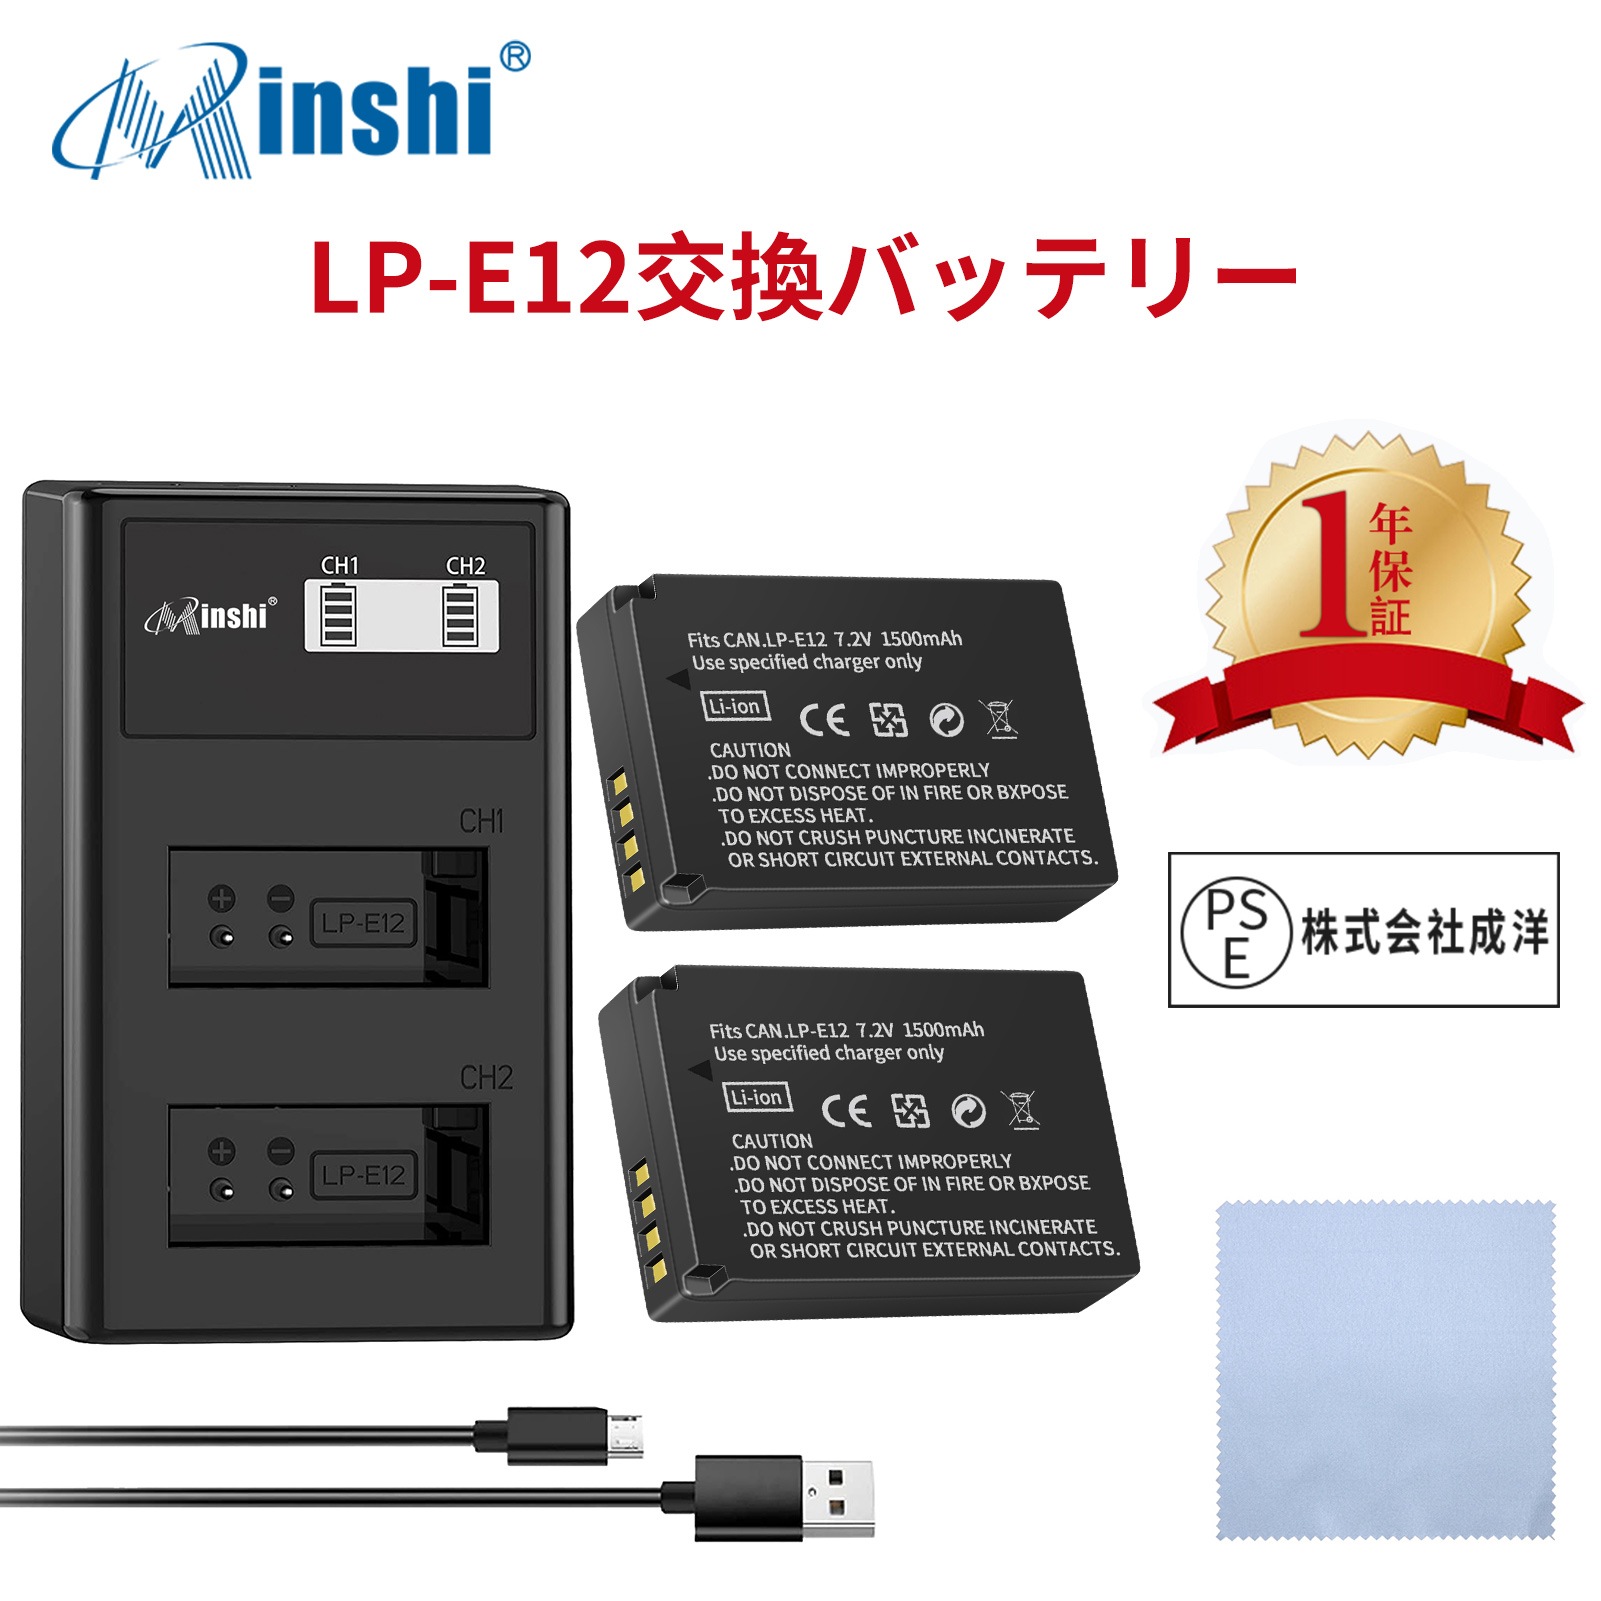 【セット】 minshi  EOS M、EOS M2  LP-E12  LP-E12 対応 互換バッテリー EOS M M100 M200 Kiss M X7 1500mAh  高品質交換用バッテリー【2個】